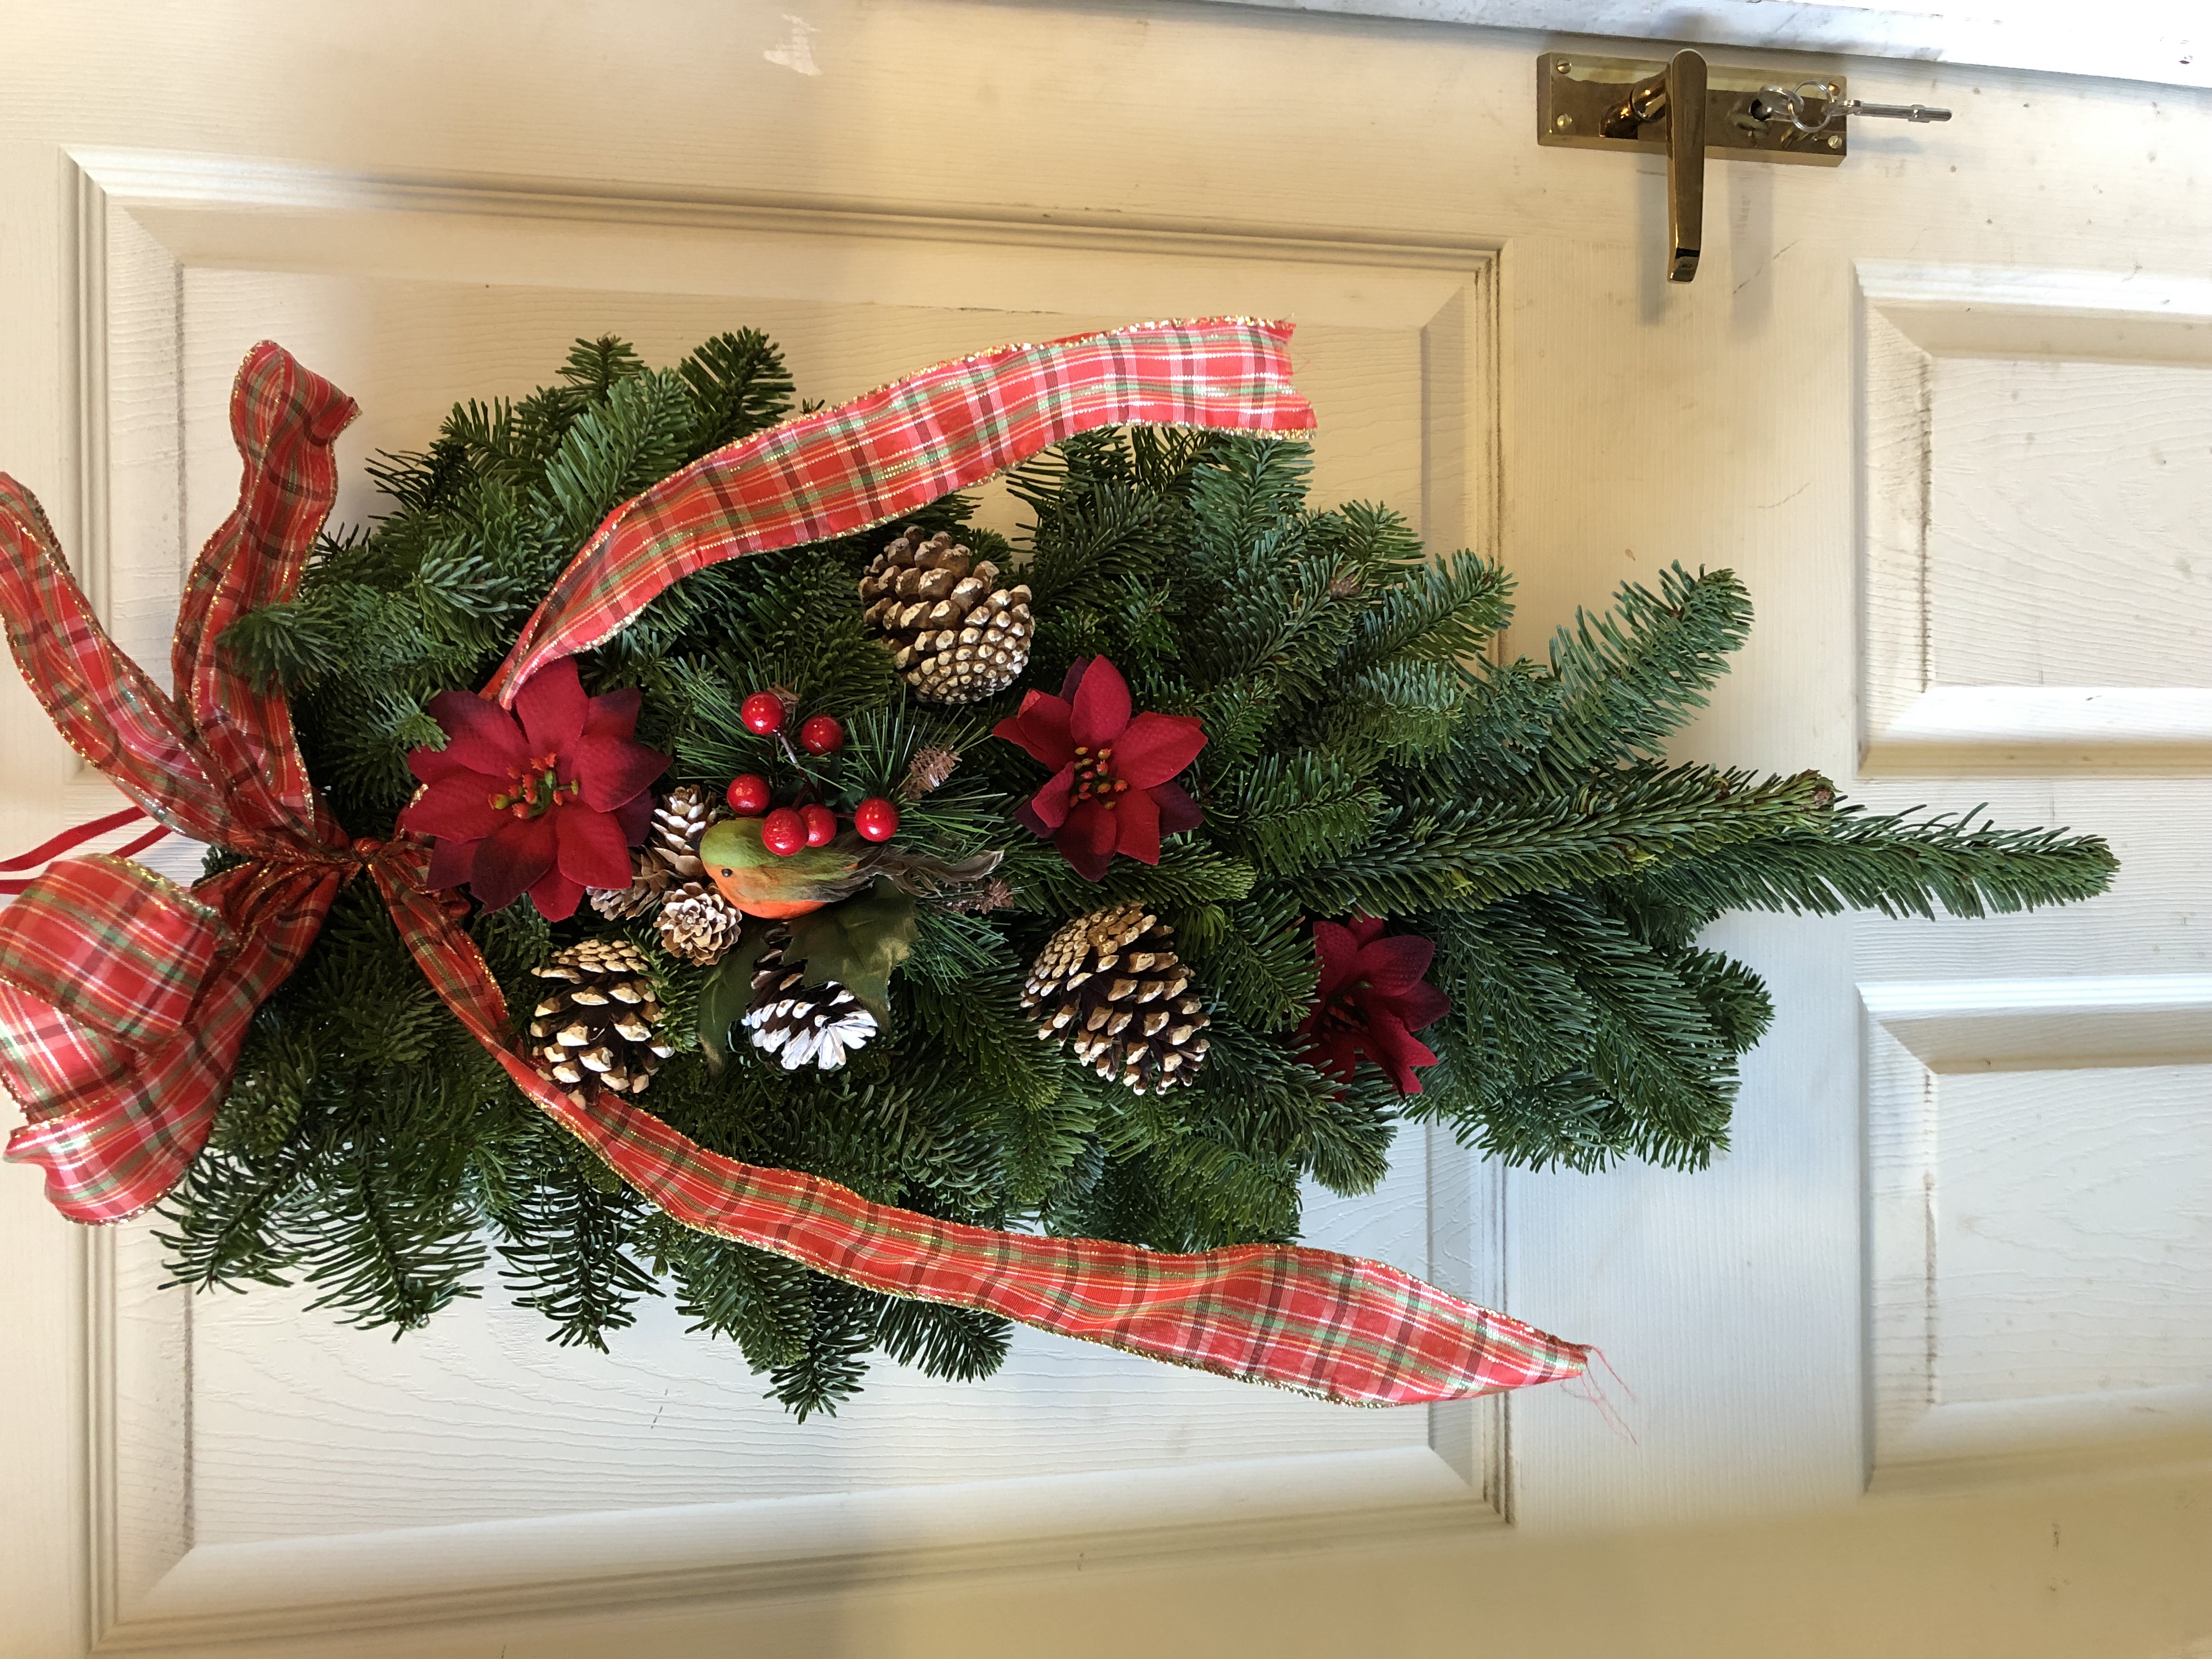 Pine Wreath Hanging on the Door